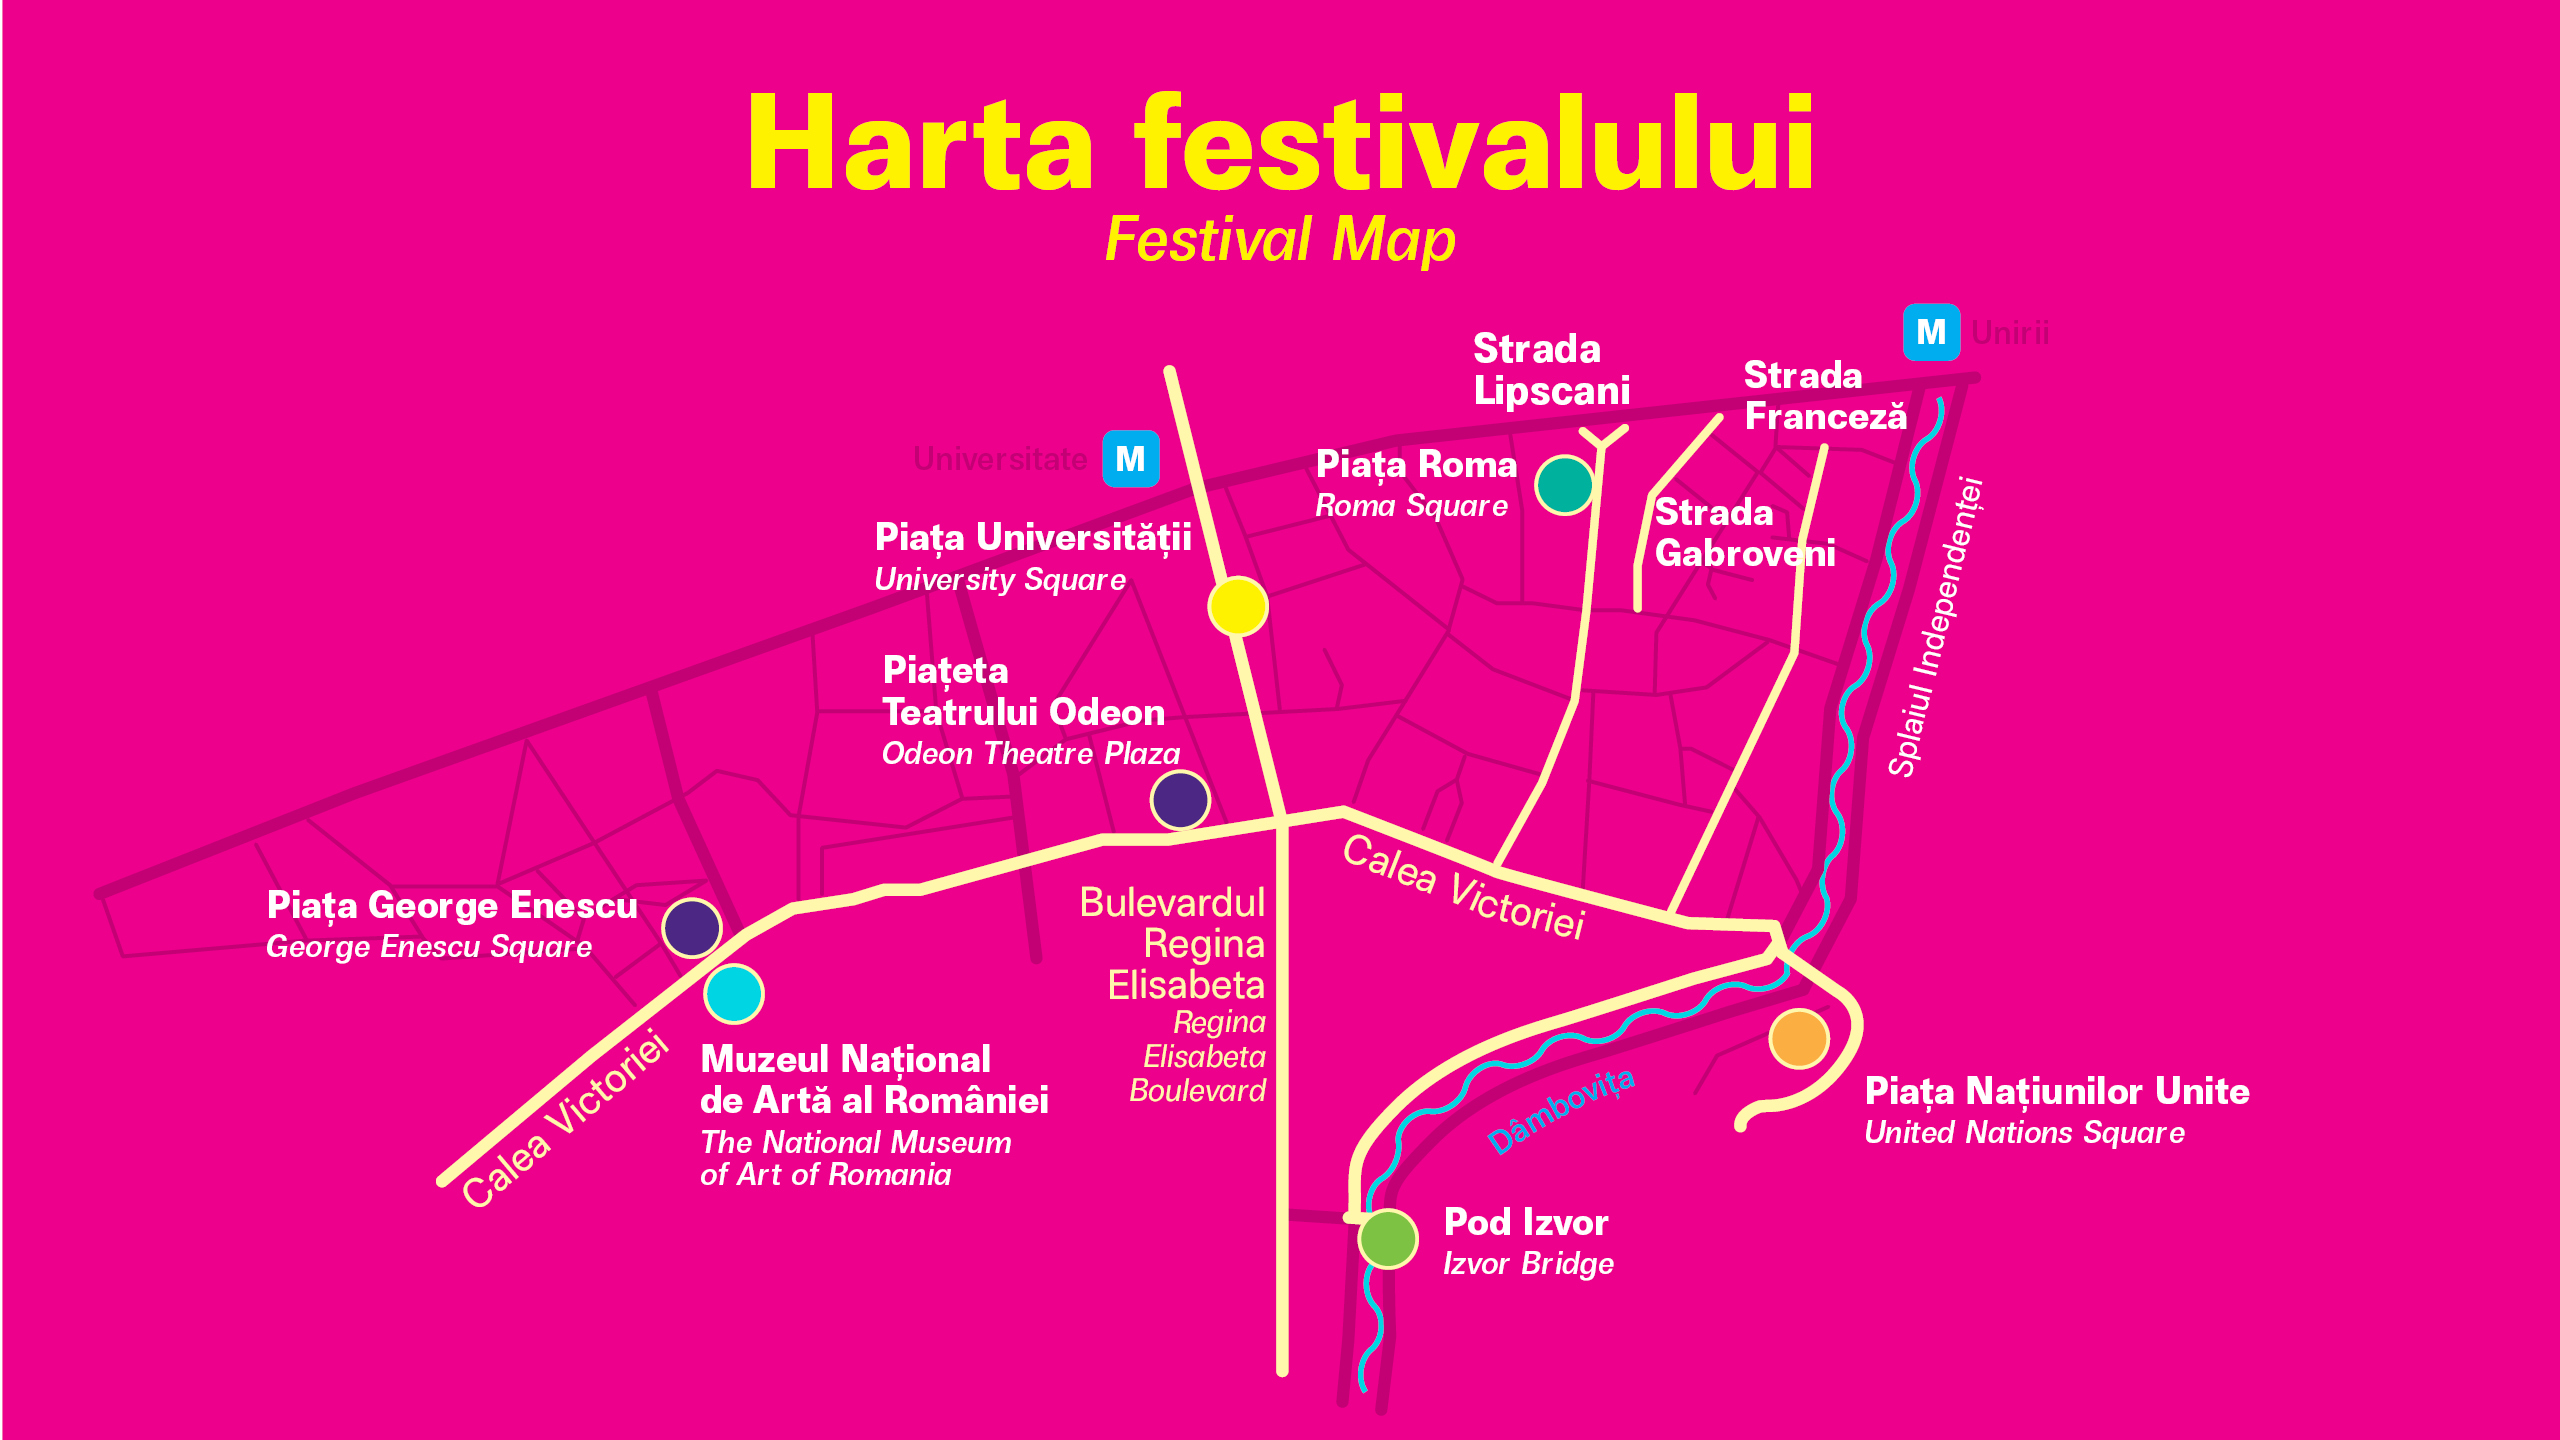 Harta festivalului